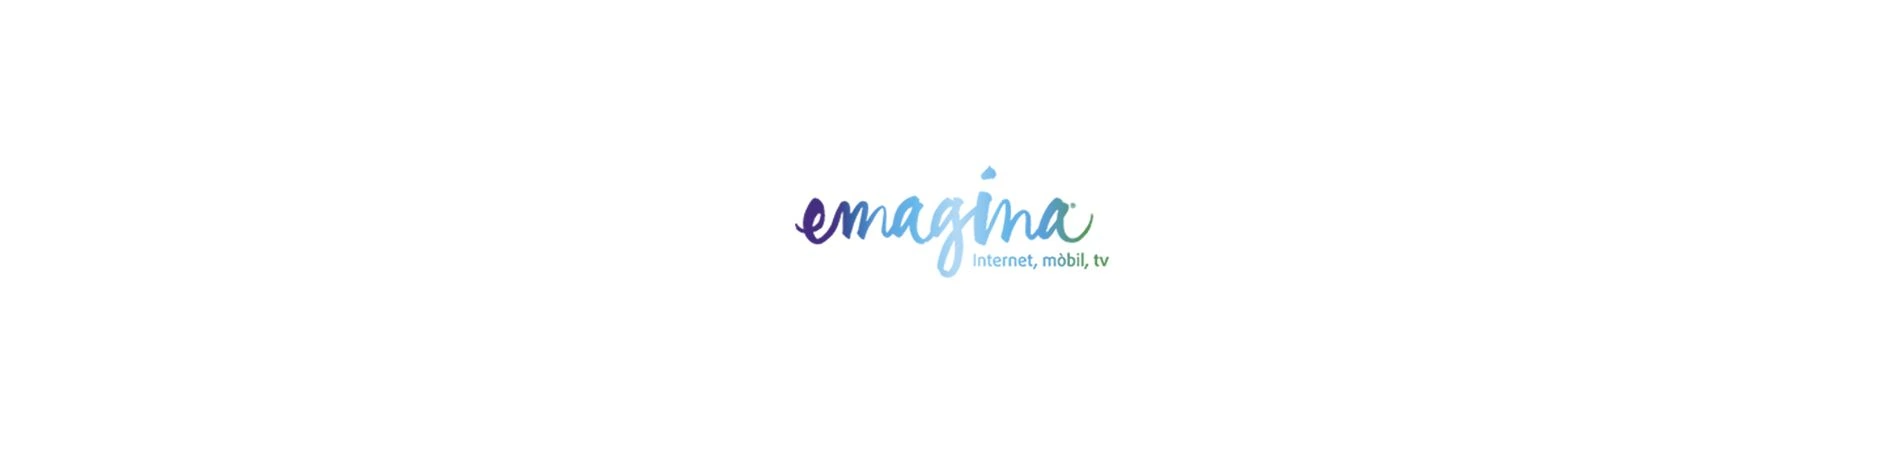 Estrategia Omnichannel para Emagina, nuevo cliente de Lifting Group